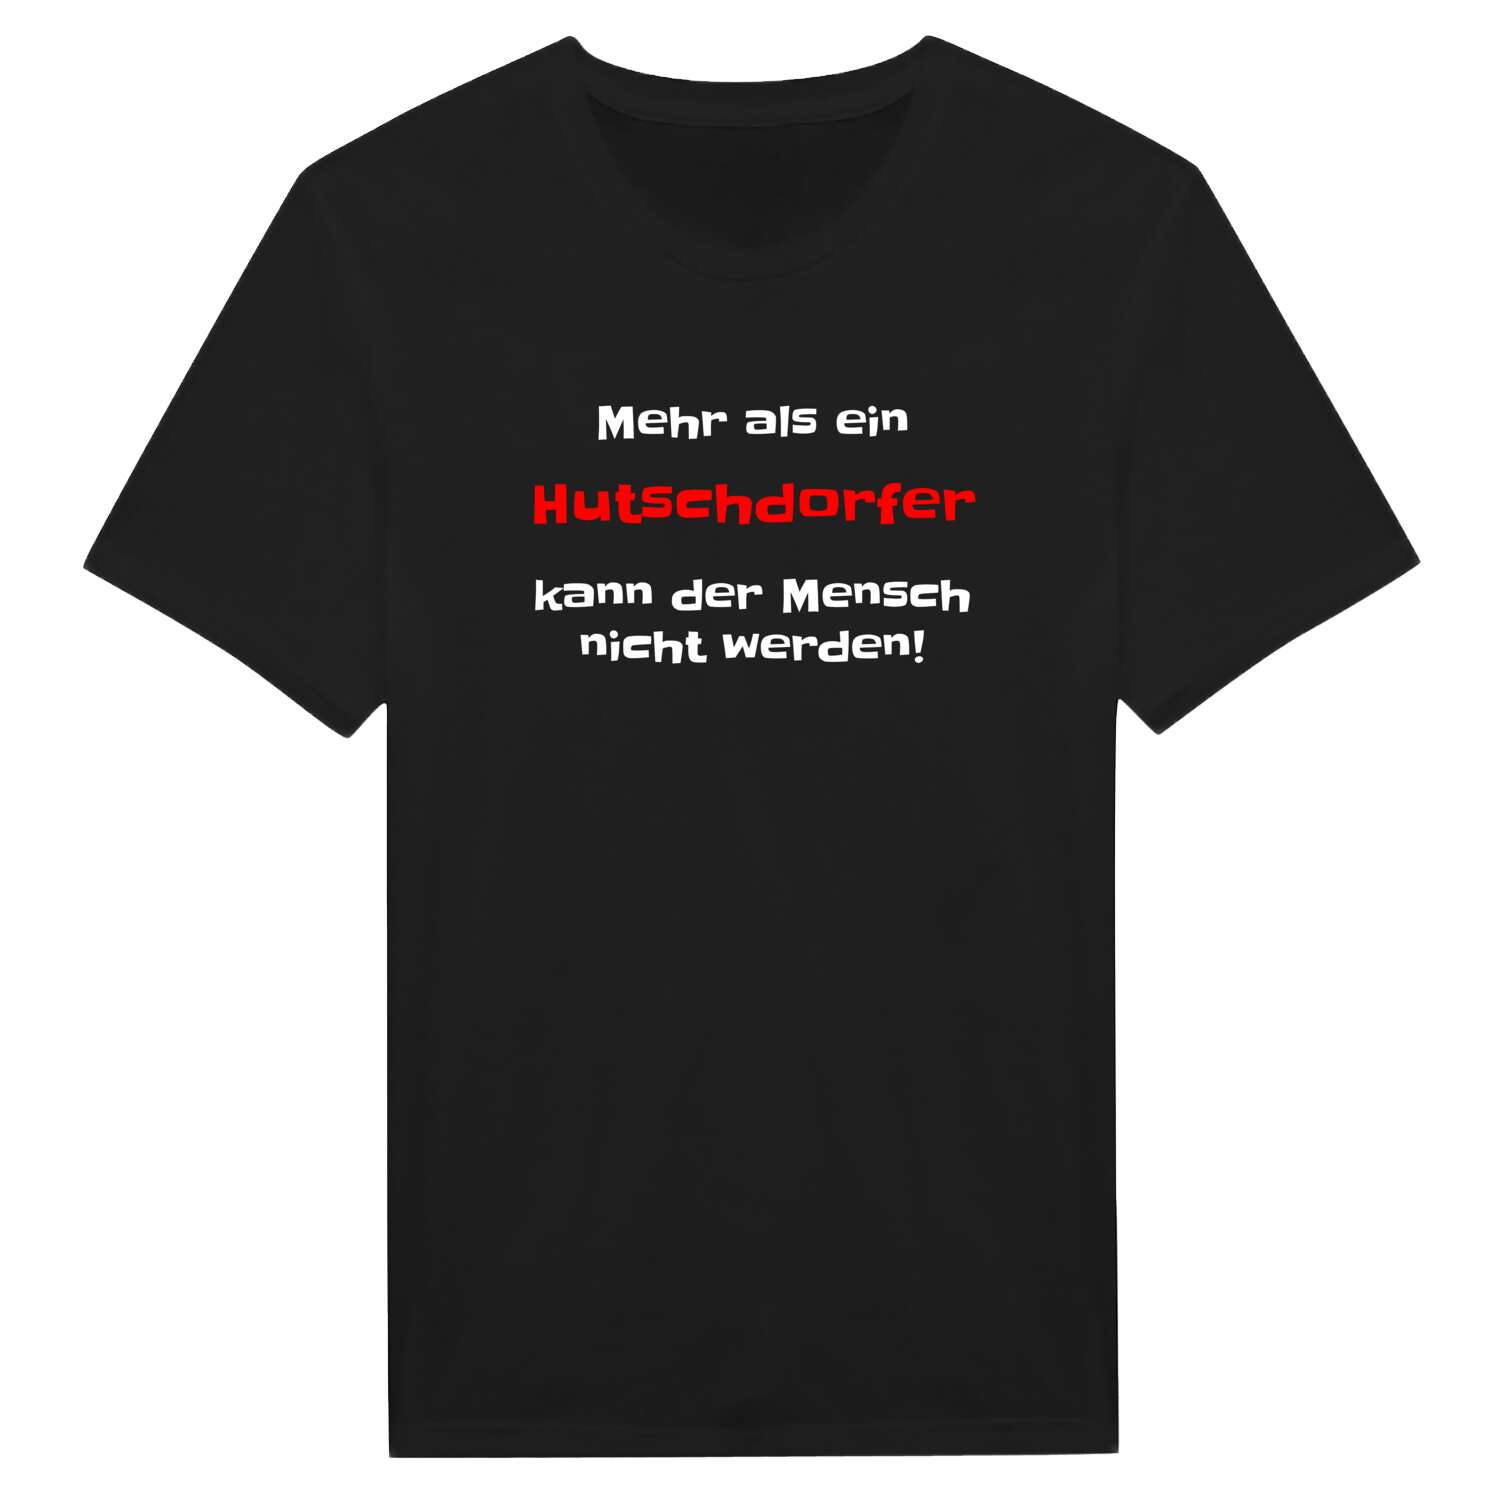 Hutschdorf T-Shirt »Mehr als ein«